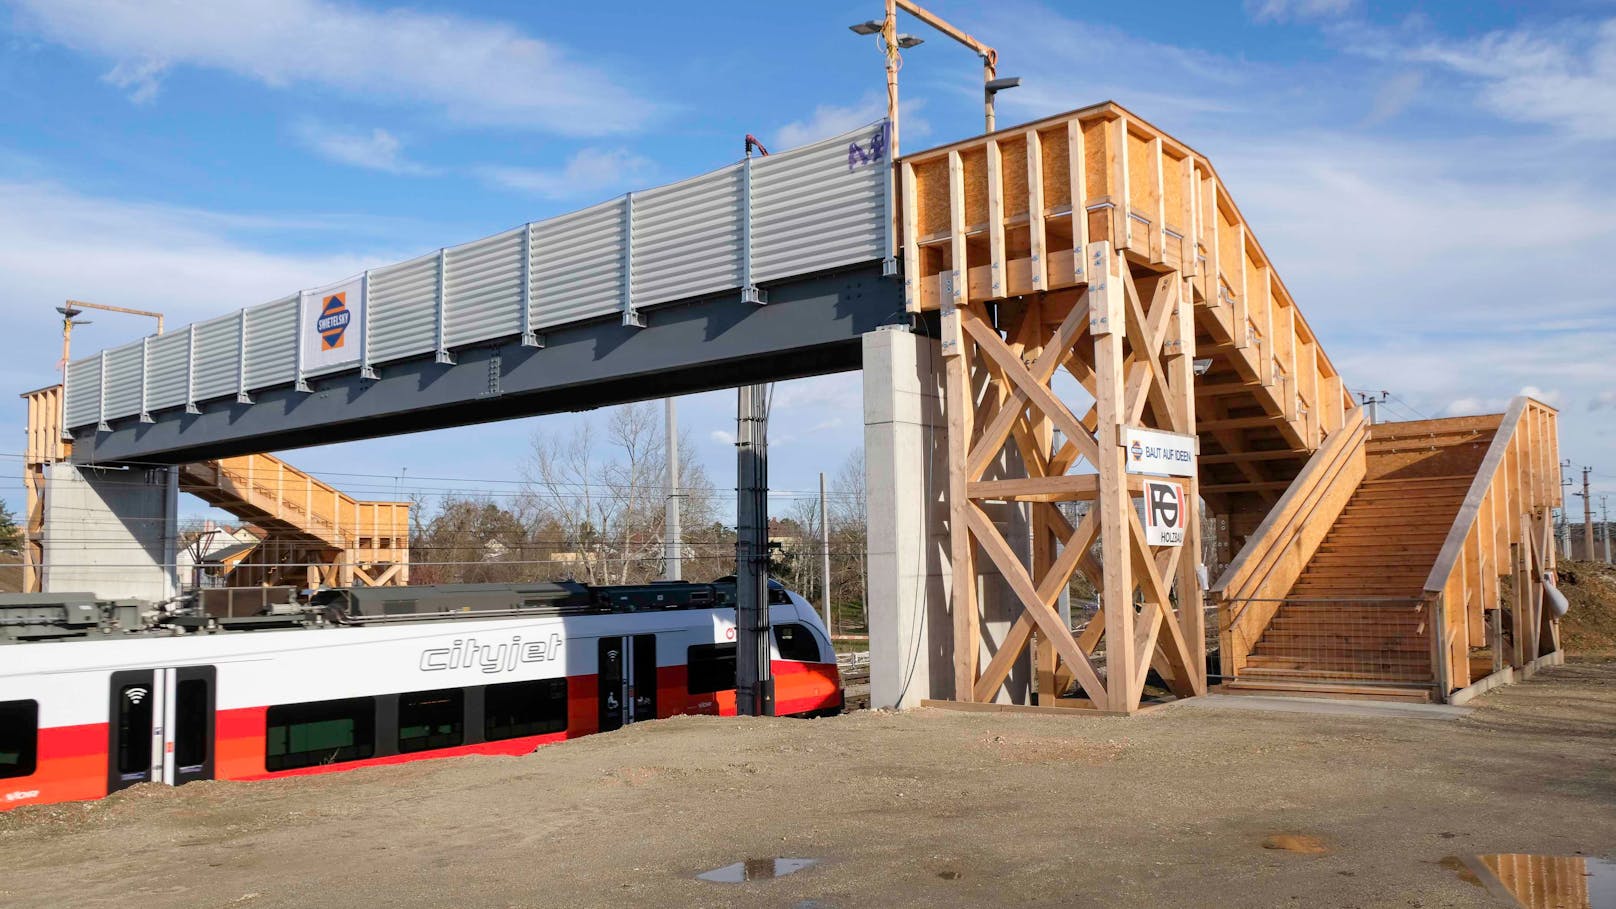 Damit der Bahnbetrieb trotz Bauarbeiten aufrecht erhalten werden kann, errichten die ÖBB provisorische Bahnsteige, damit – auch während der Arbeiten – zwei Bahnsteige zur Verfügung stehen. Im Rahmen der Modernisierung wird auch die Park&Ride-Anlage Süd erweitert und modernisiert.